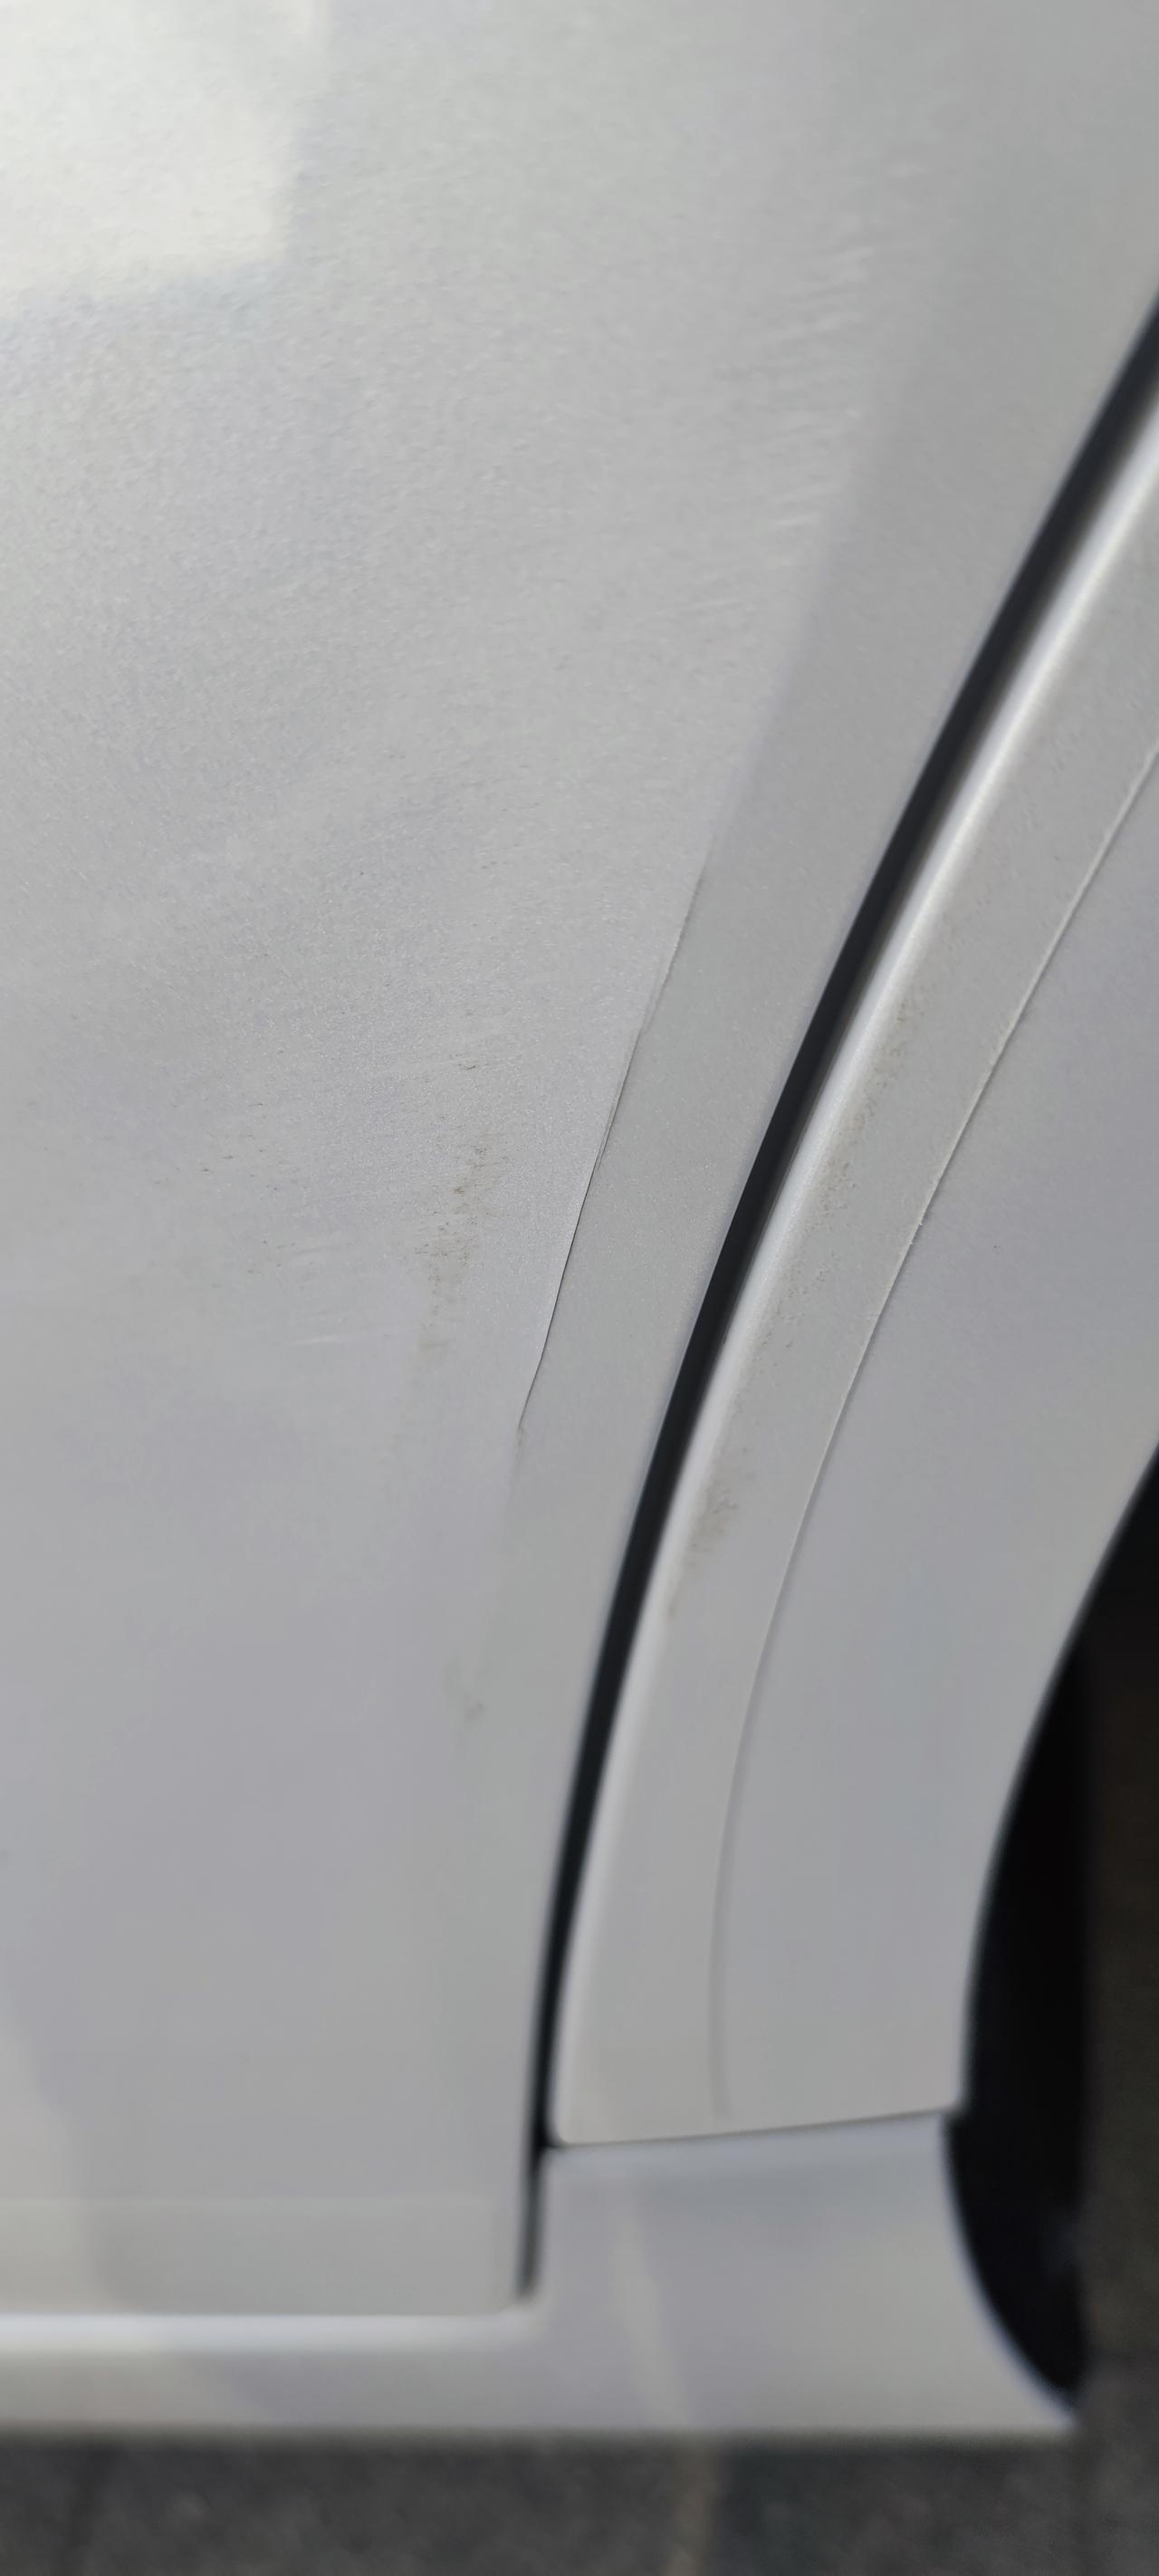 丰田亚洲龙 前几天怼了一下当时还是没裂纹的，今天洗车发现了位置是左后门上面。各位有必要去做补漆吗？不补漆会不会生锈啊两个